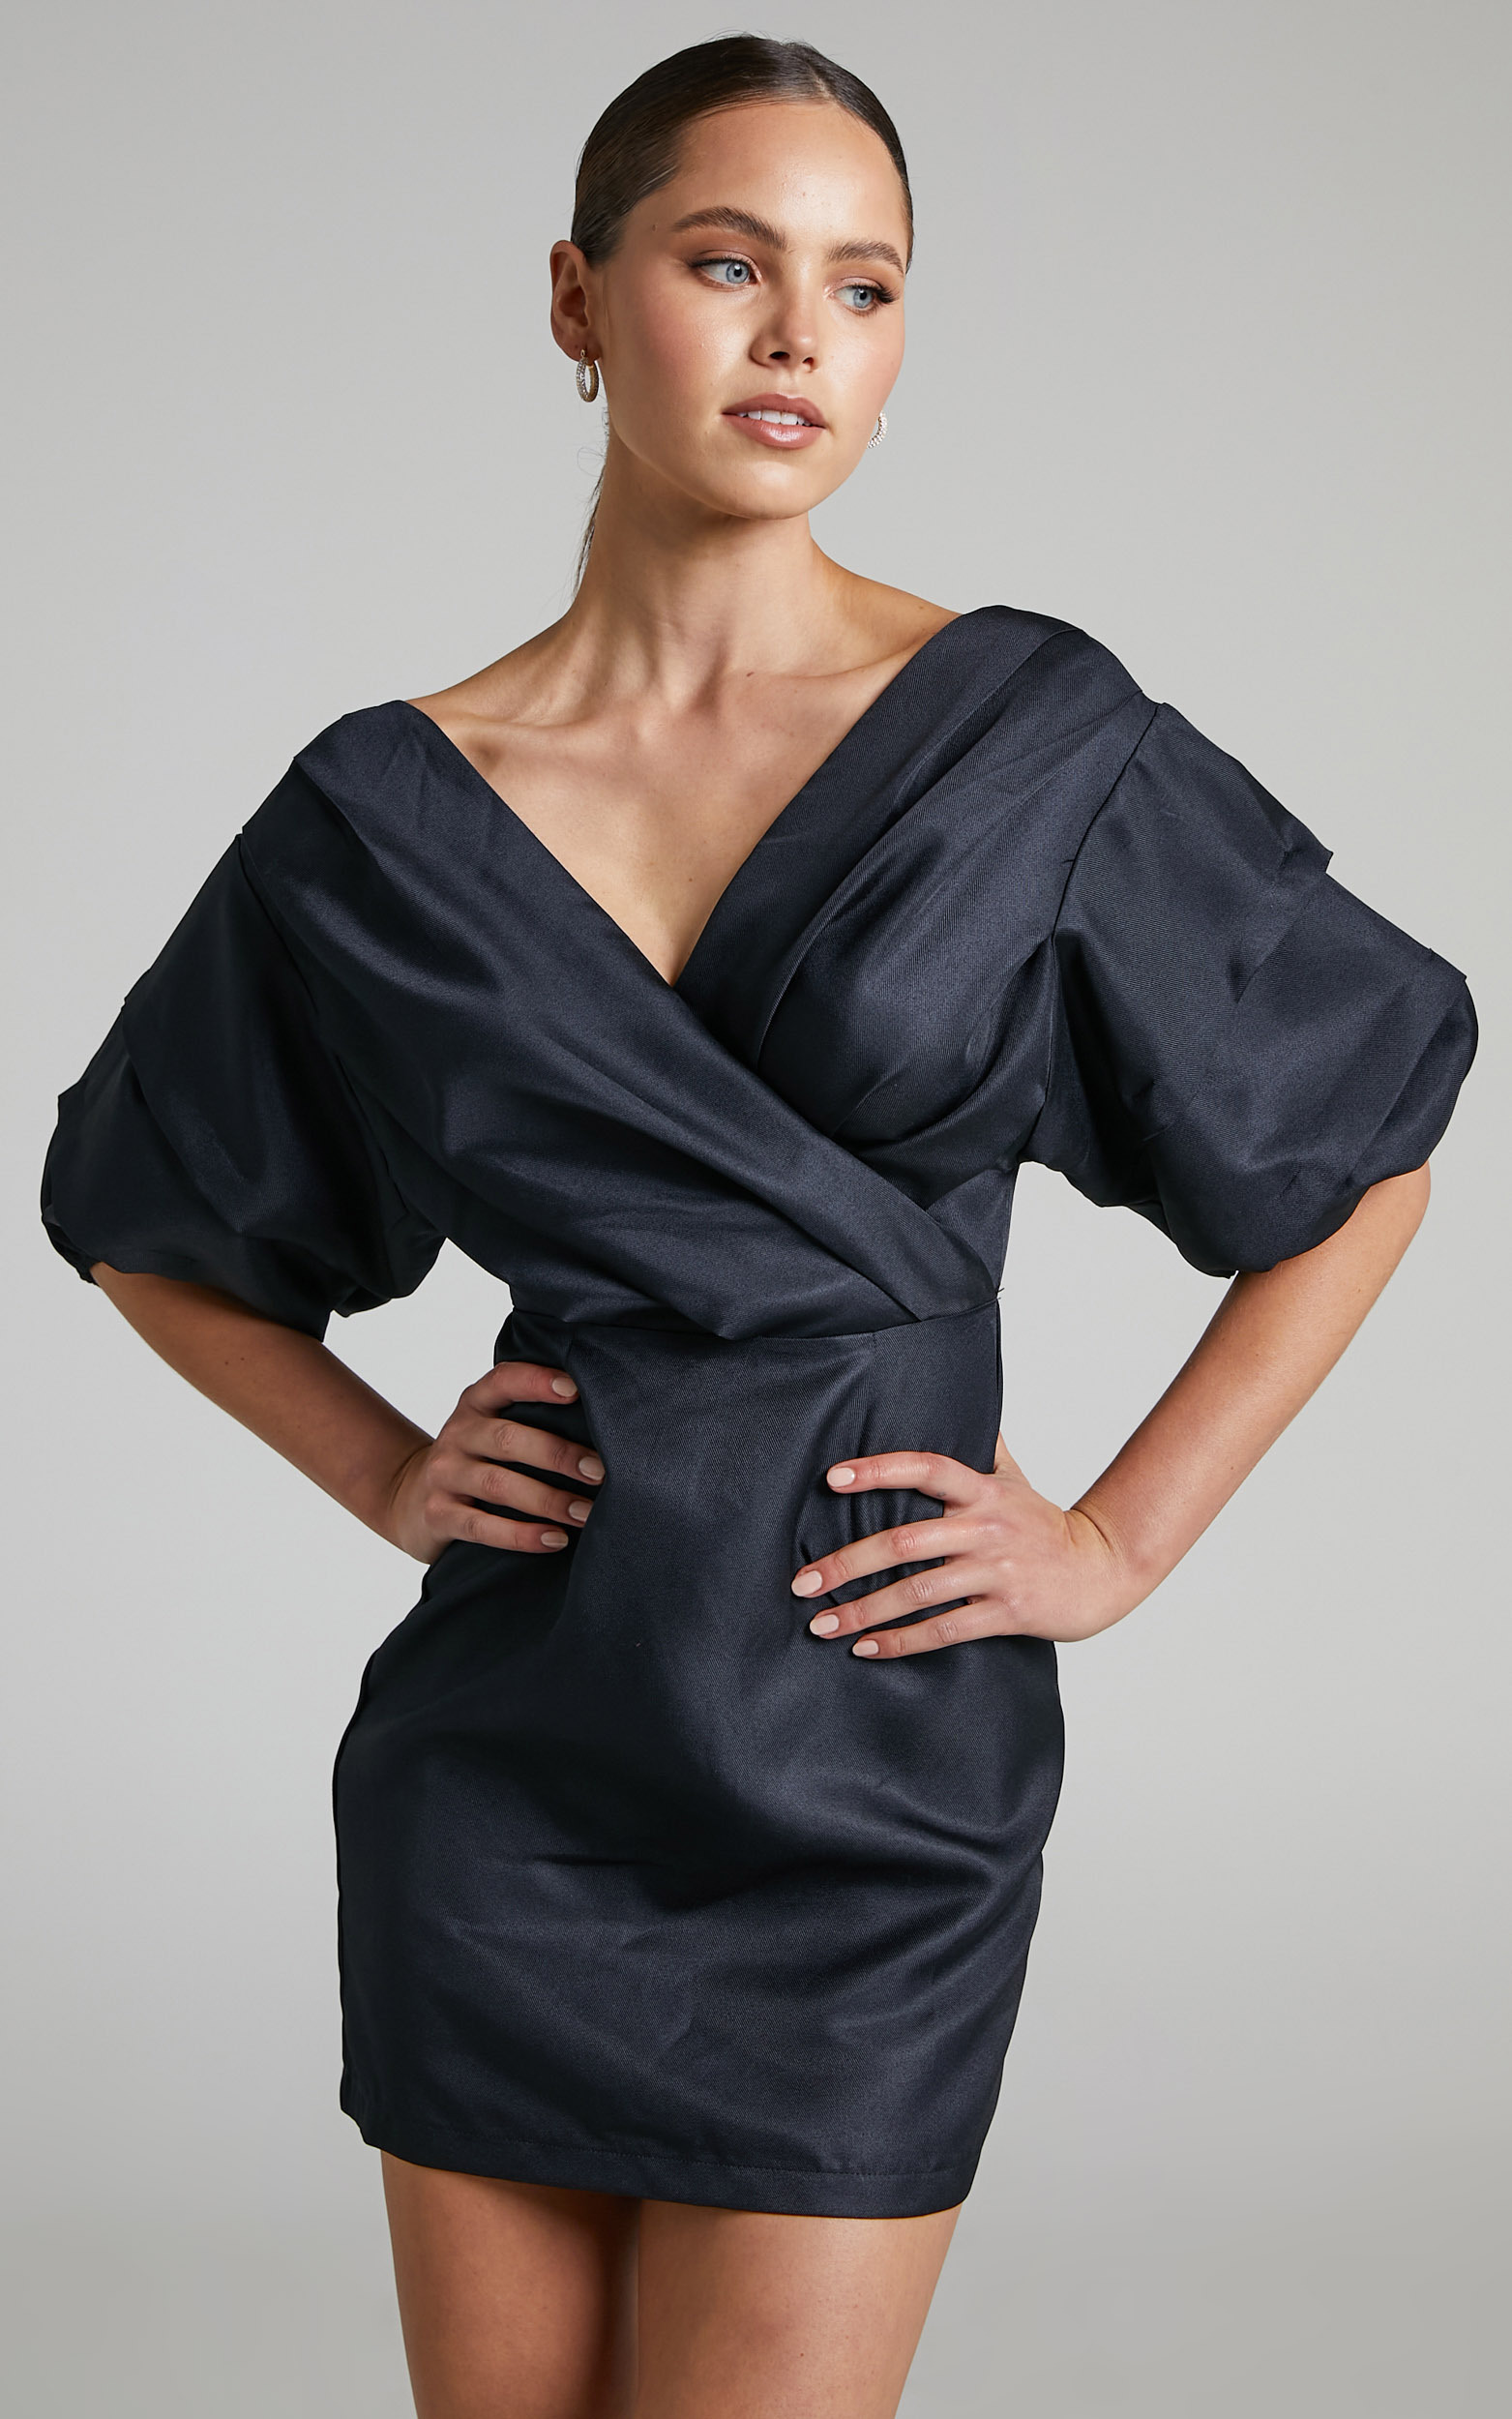 Anastasija Off Shoulder Mini Dress in Black - 06, BLK1, hi-res image number null